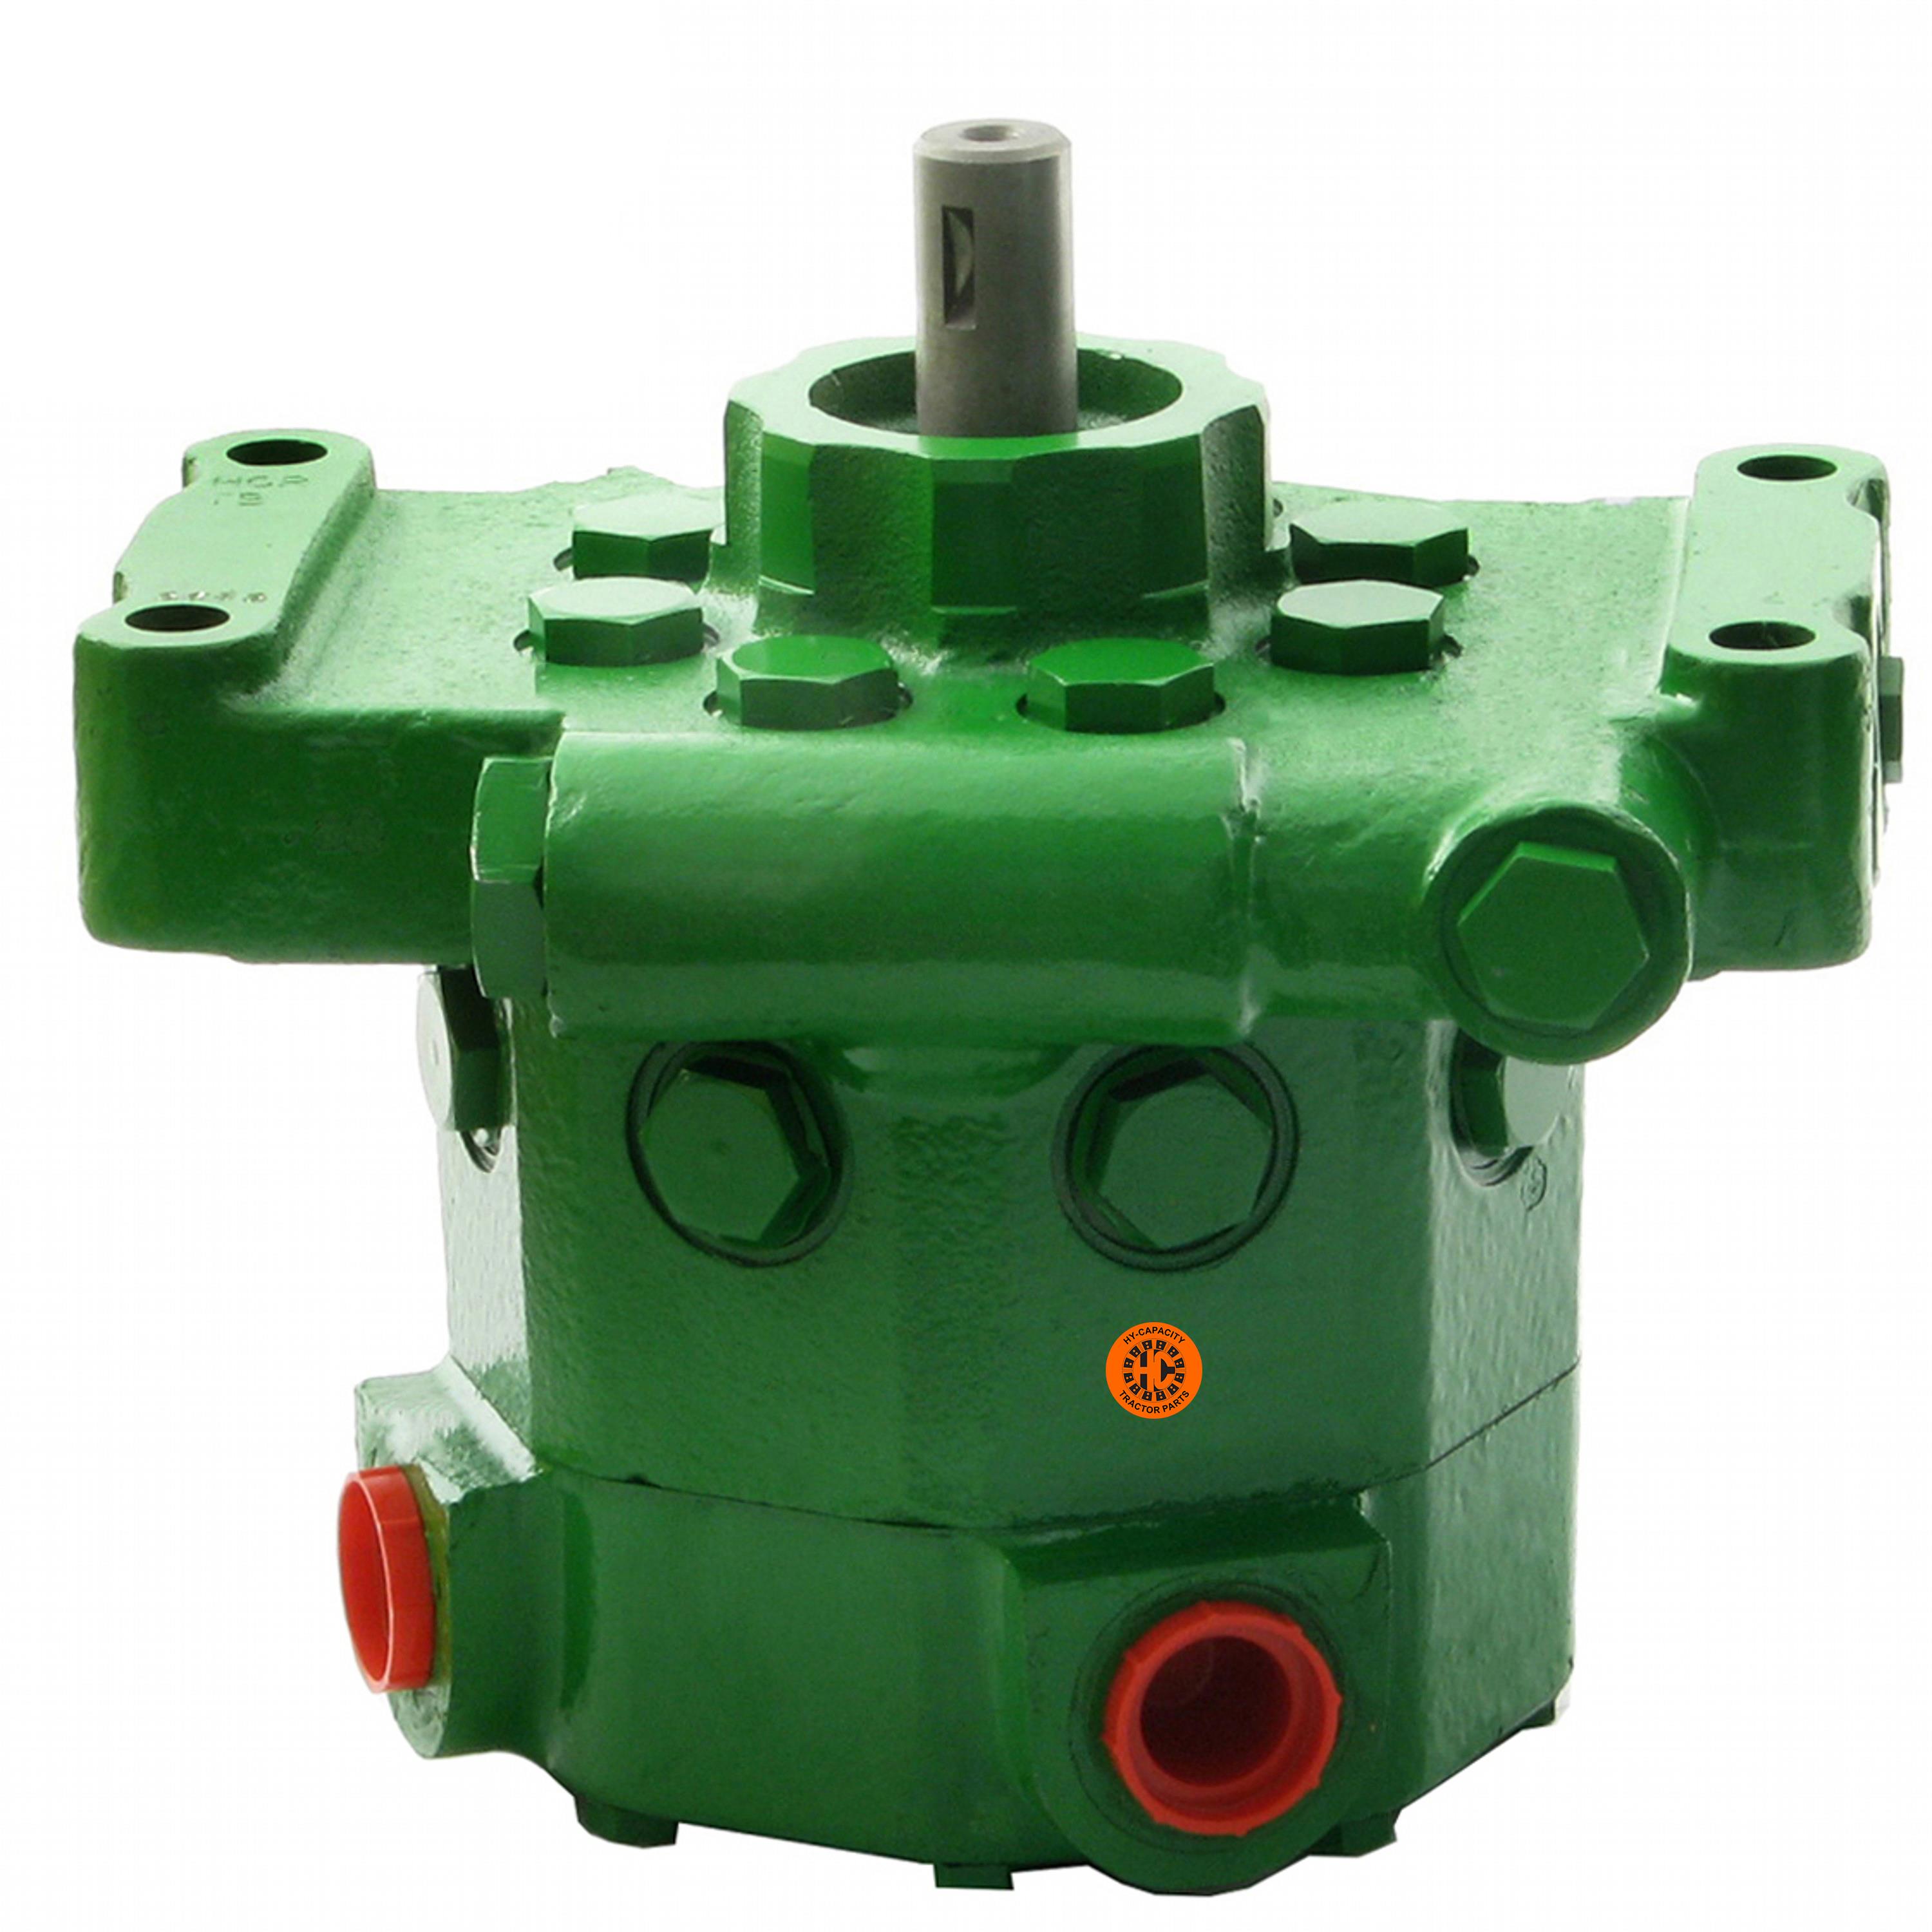 Hydraulic Pump, New, 10 GPM